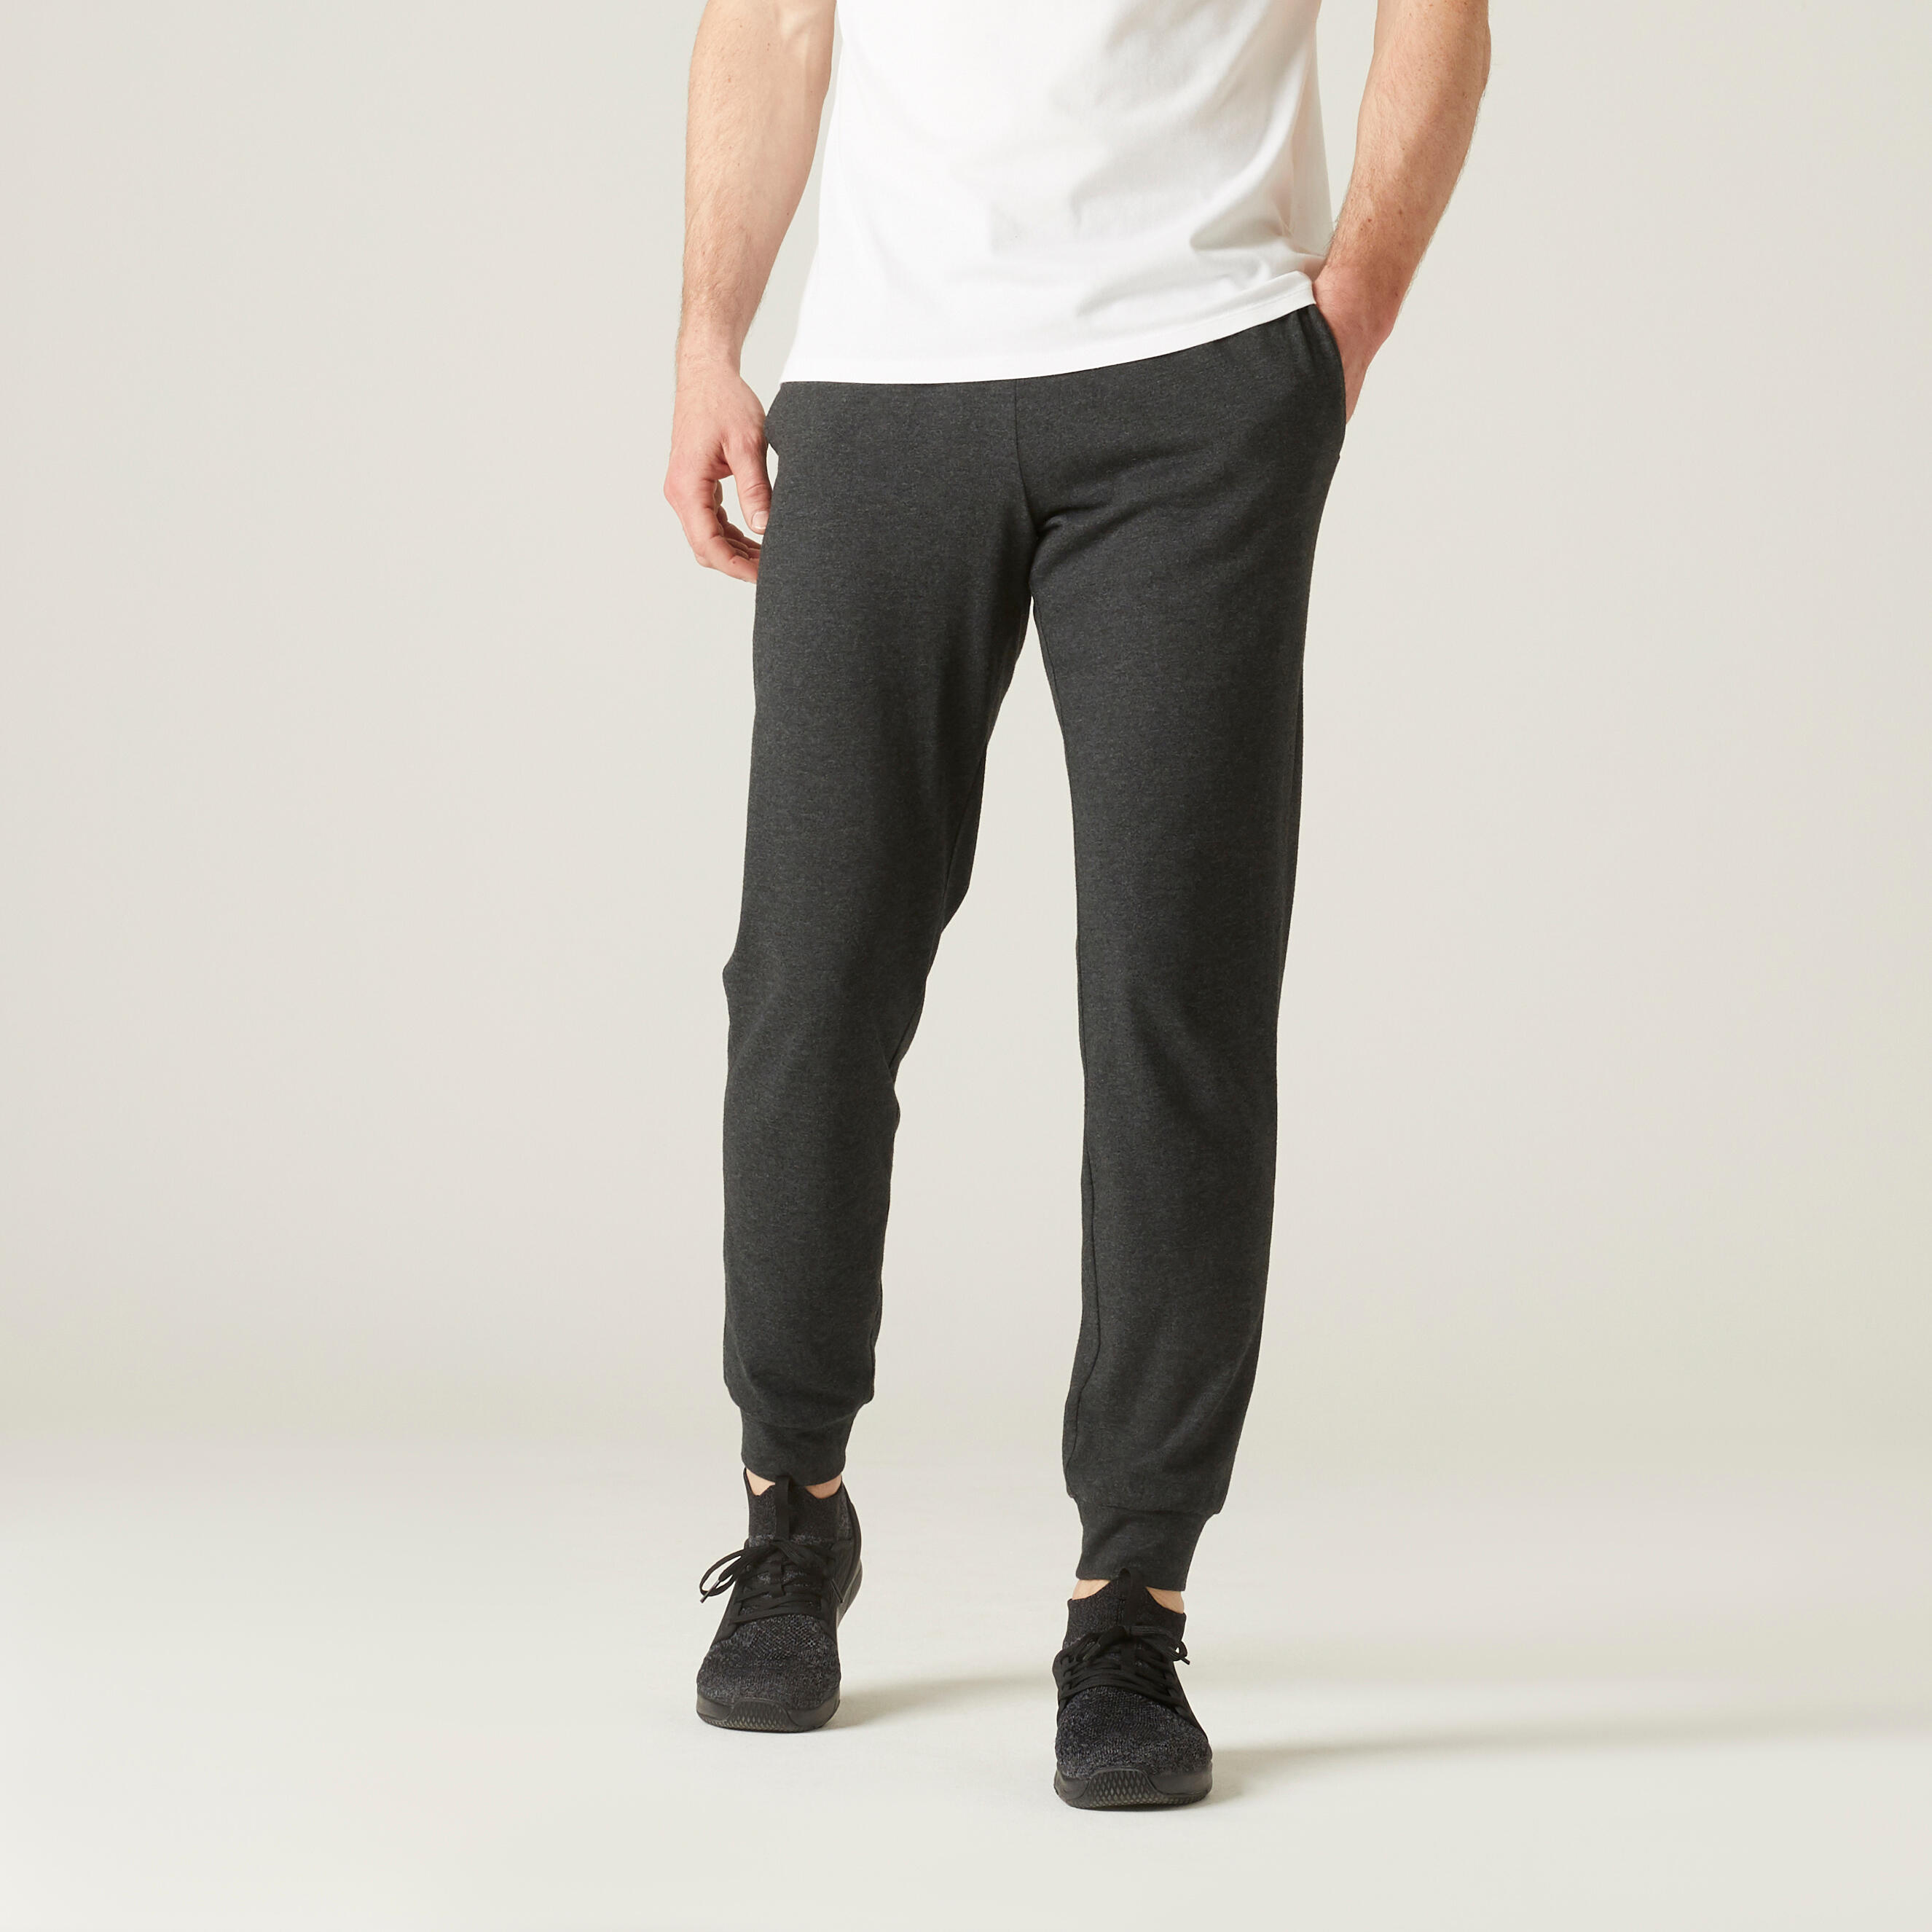 Alto Moda Men Grey Track Pants - Selling Fast at Pantaloons.com